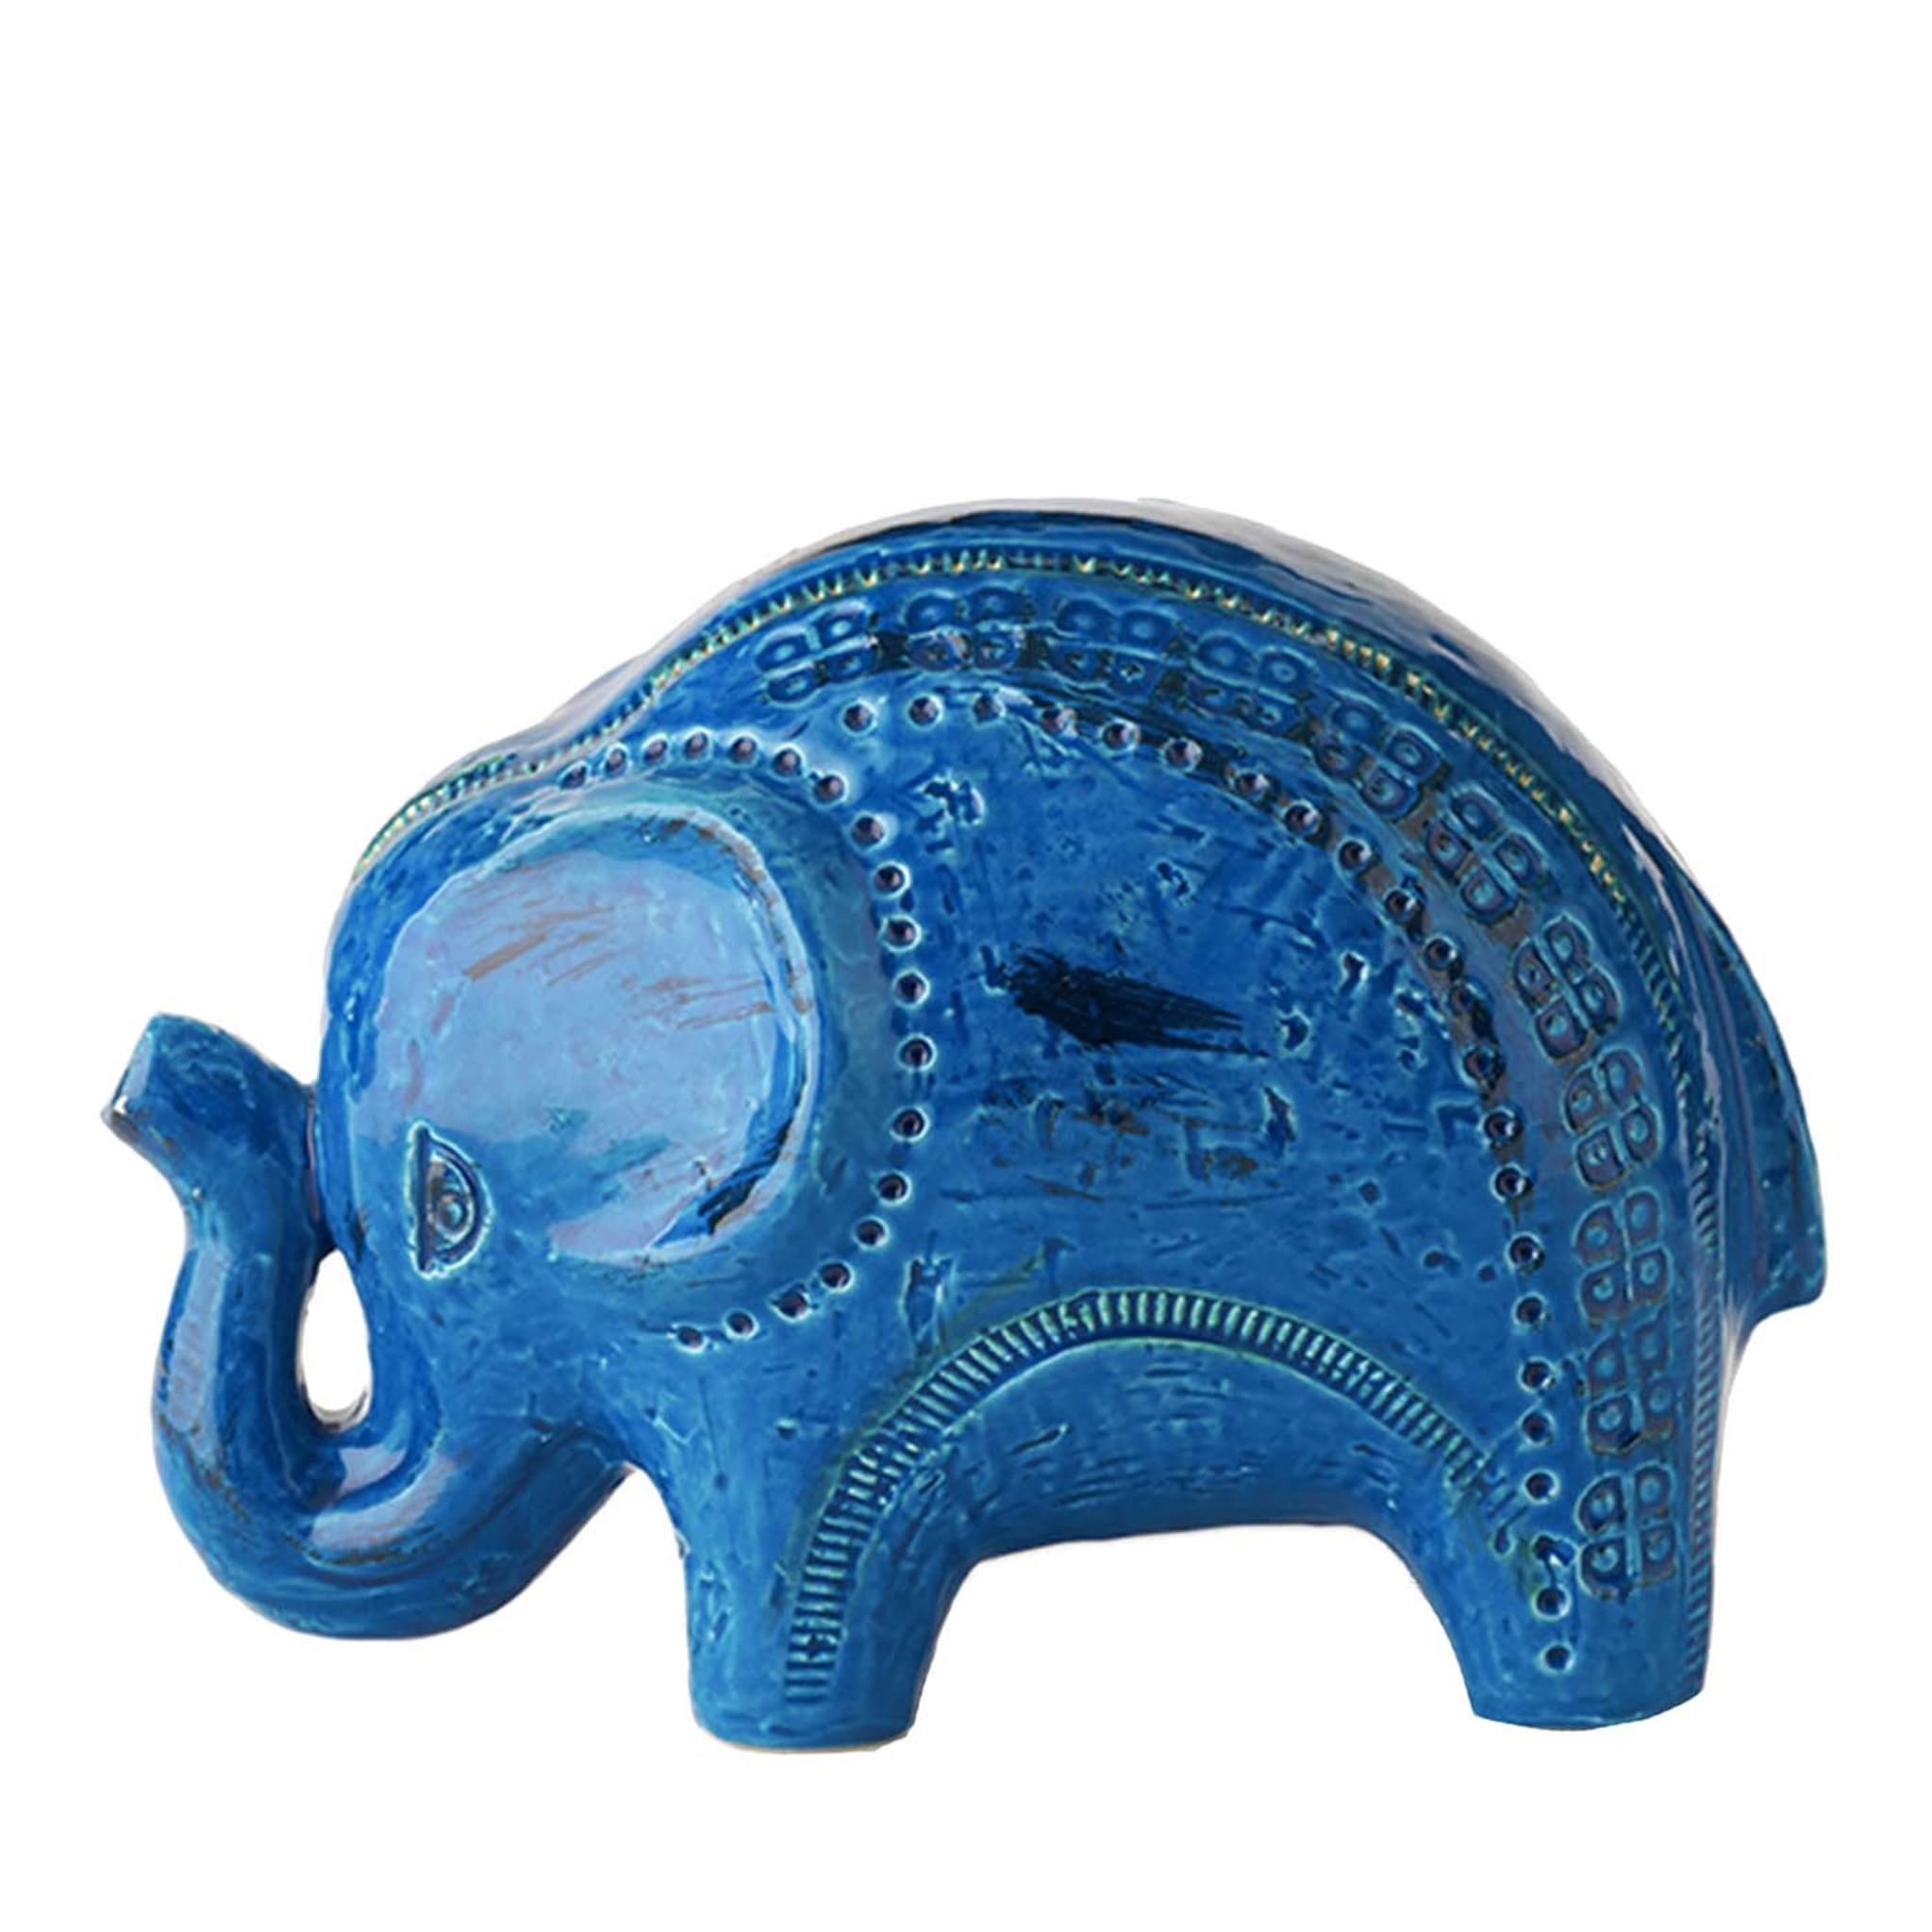 Rimini Blu Elephant Figurine by Aldo Londi - Main view